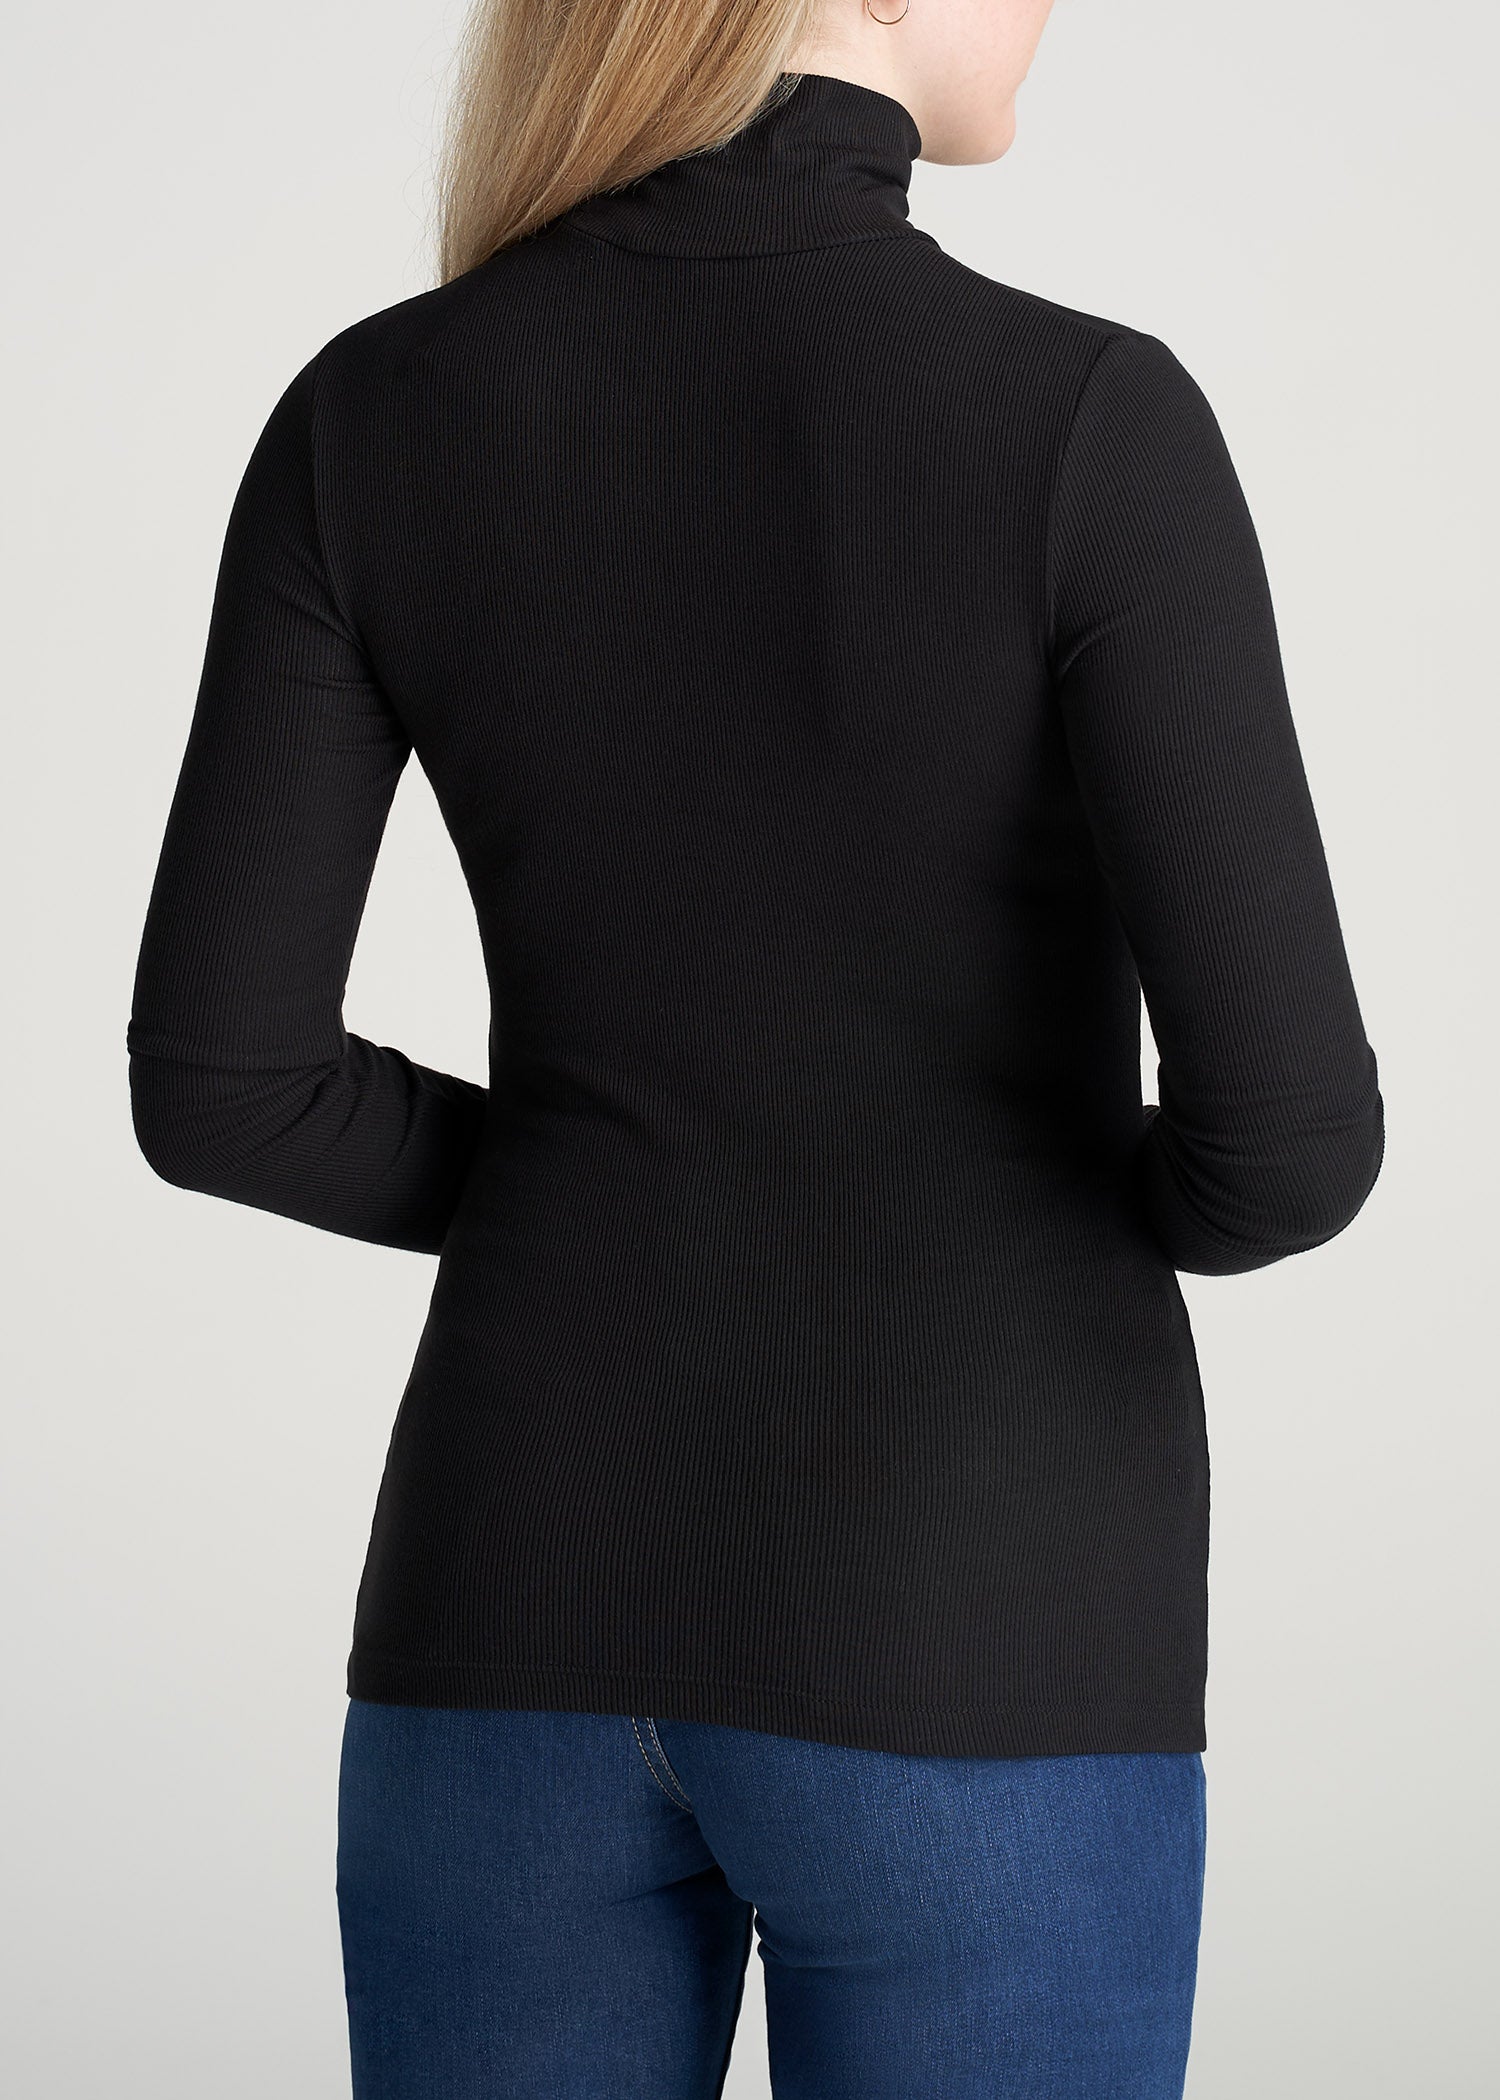 Silk Black Half Turtleneck Bodysuit For Women Long Sleeve Casual